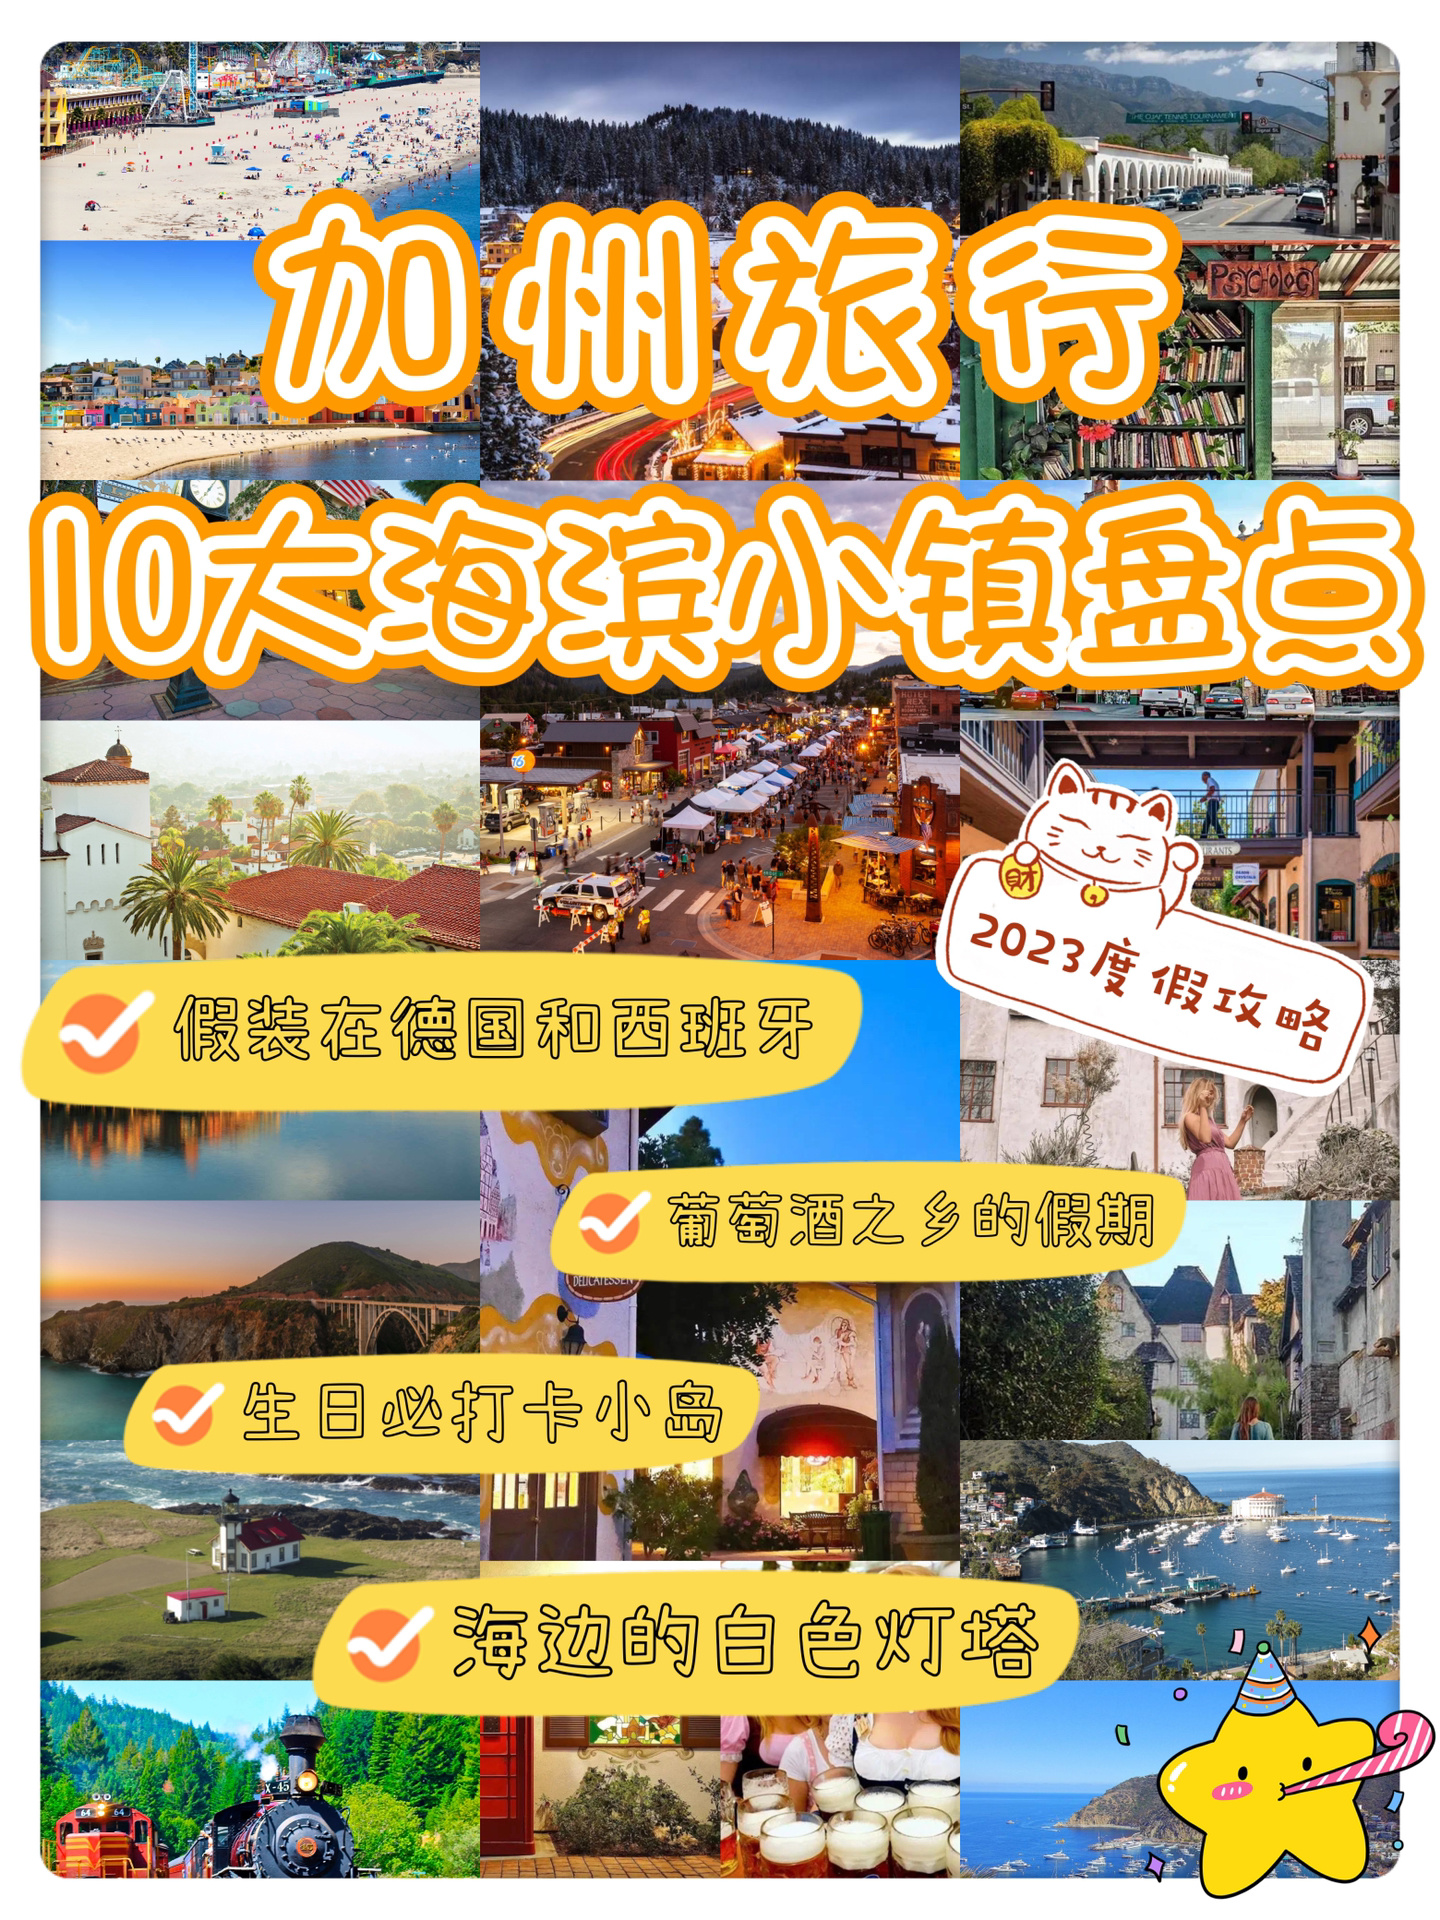 重庆|加州十大海滨小镇旅行打卡攻略, 收藏度假